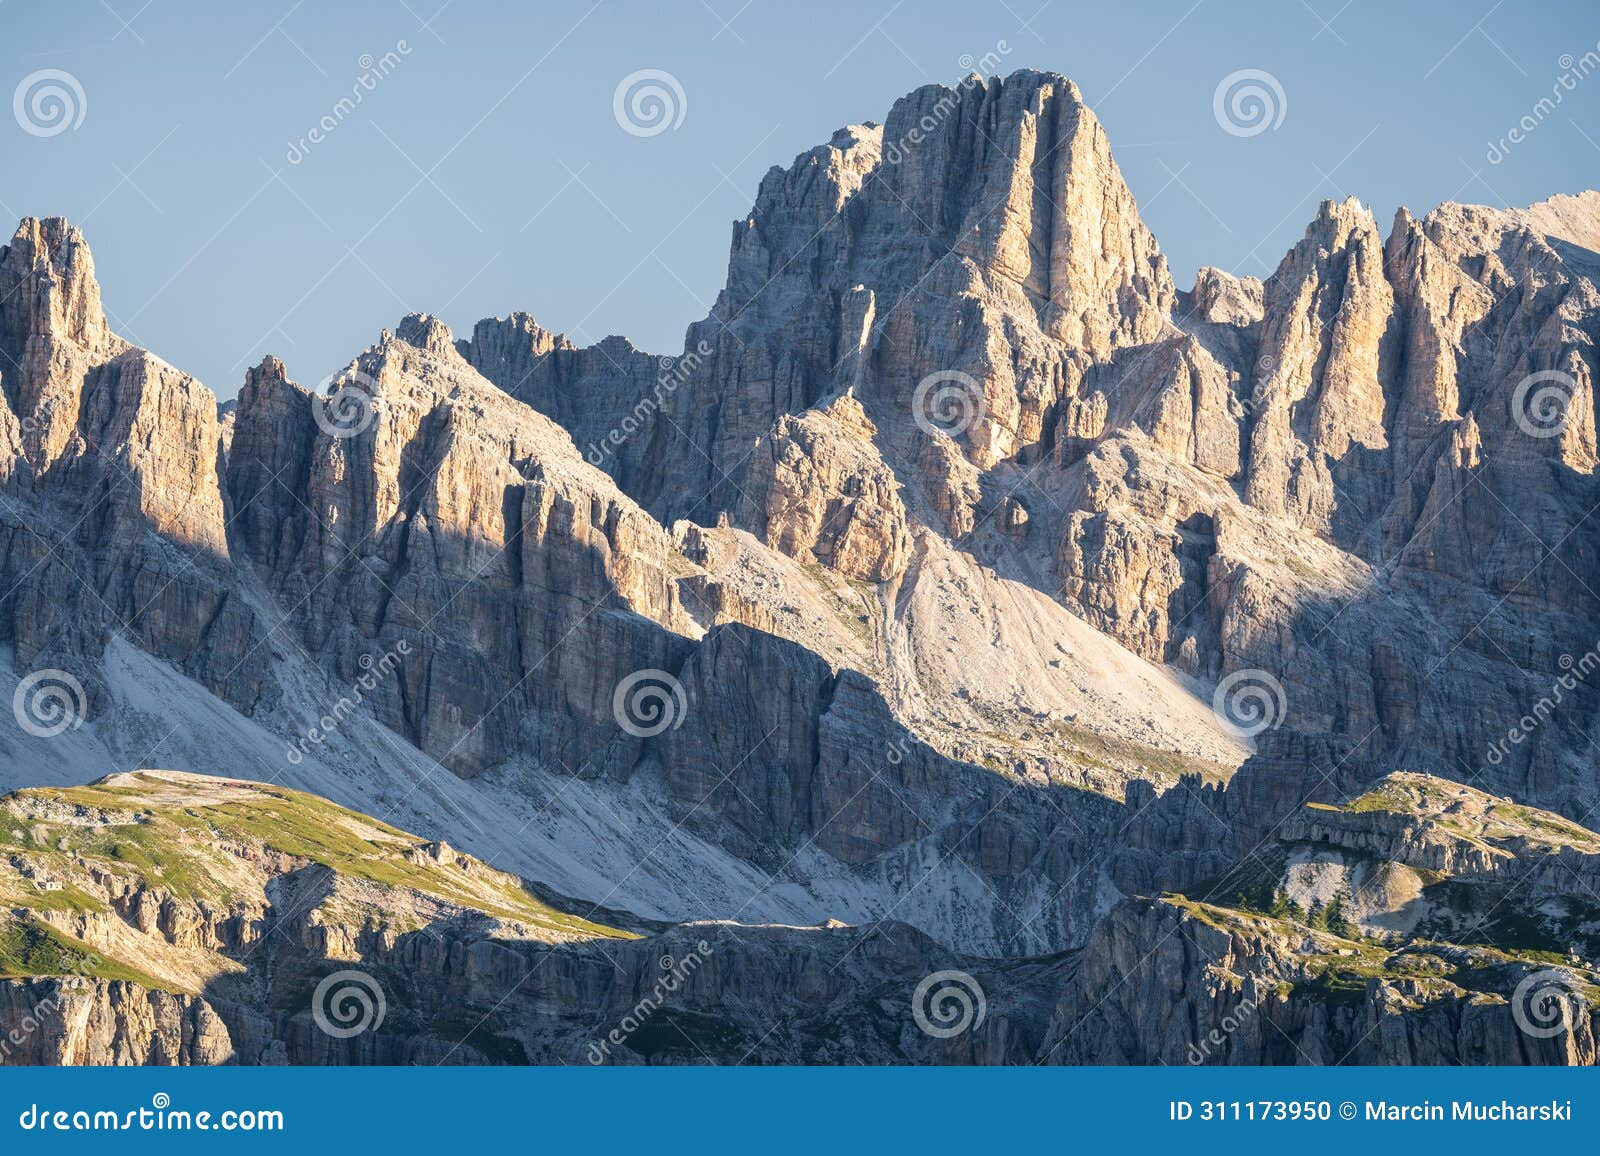 piza de medo punta di mezzo peak in italian dolomites